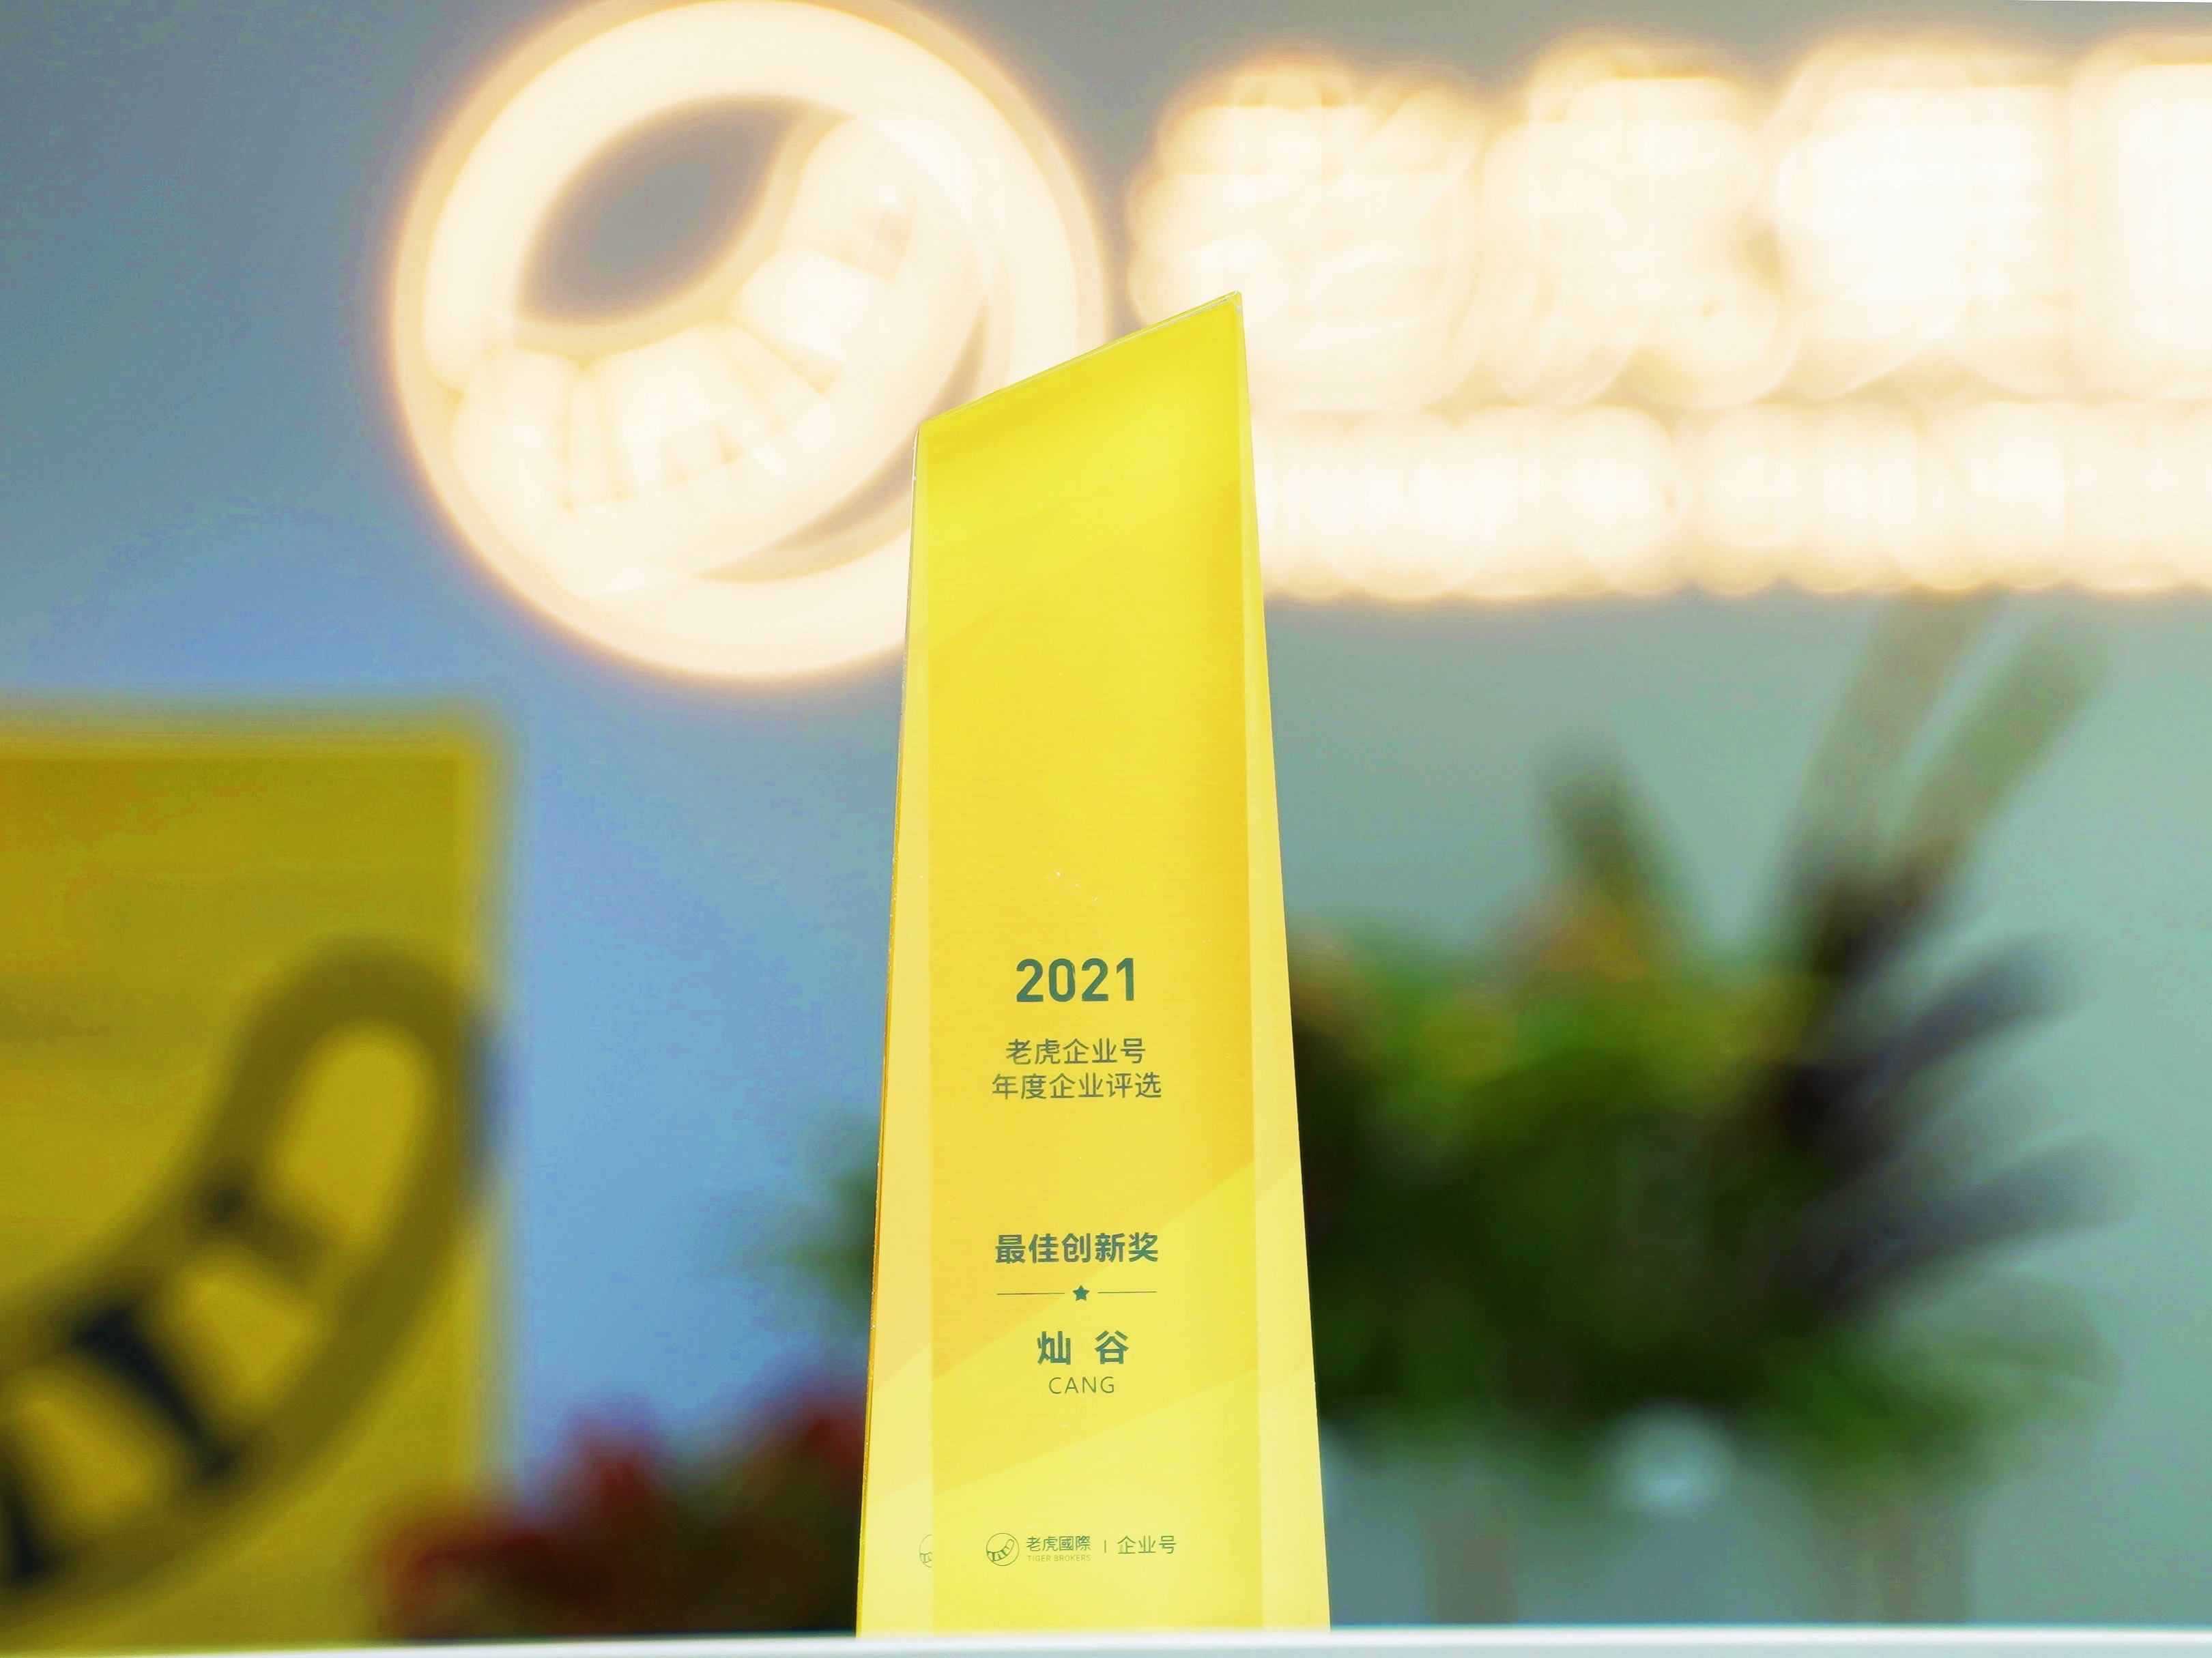 灿谷集团荣获老虎国际2021虎友年度企业评选“最佳创新奖”